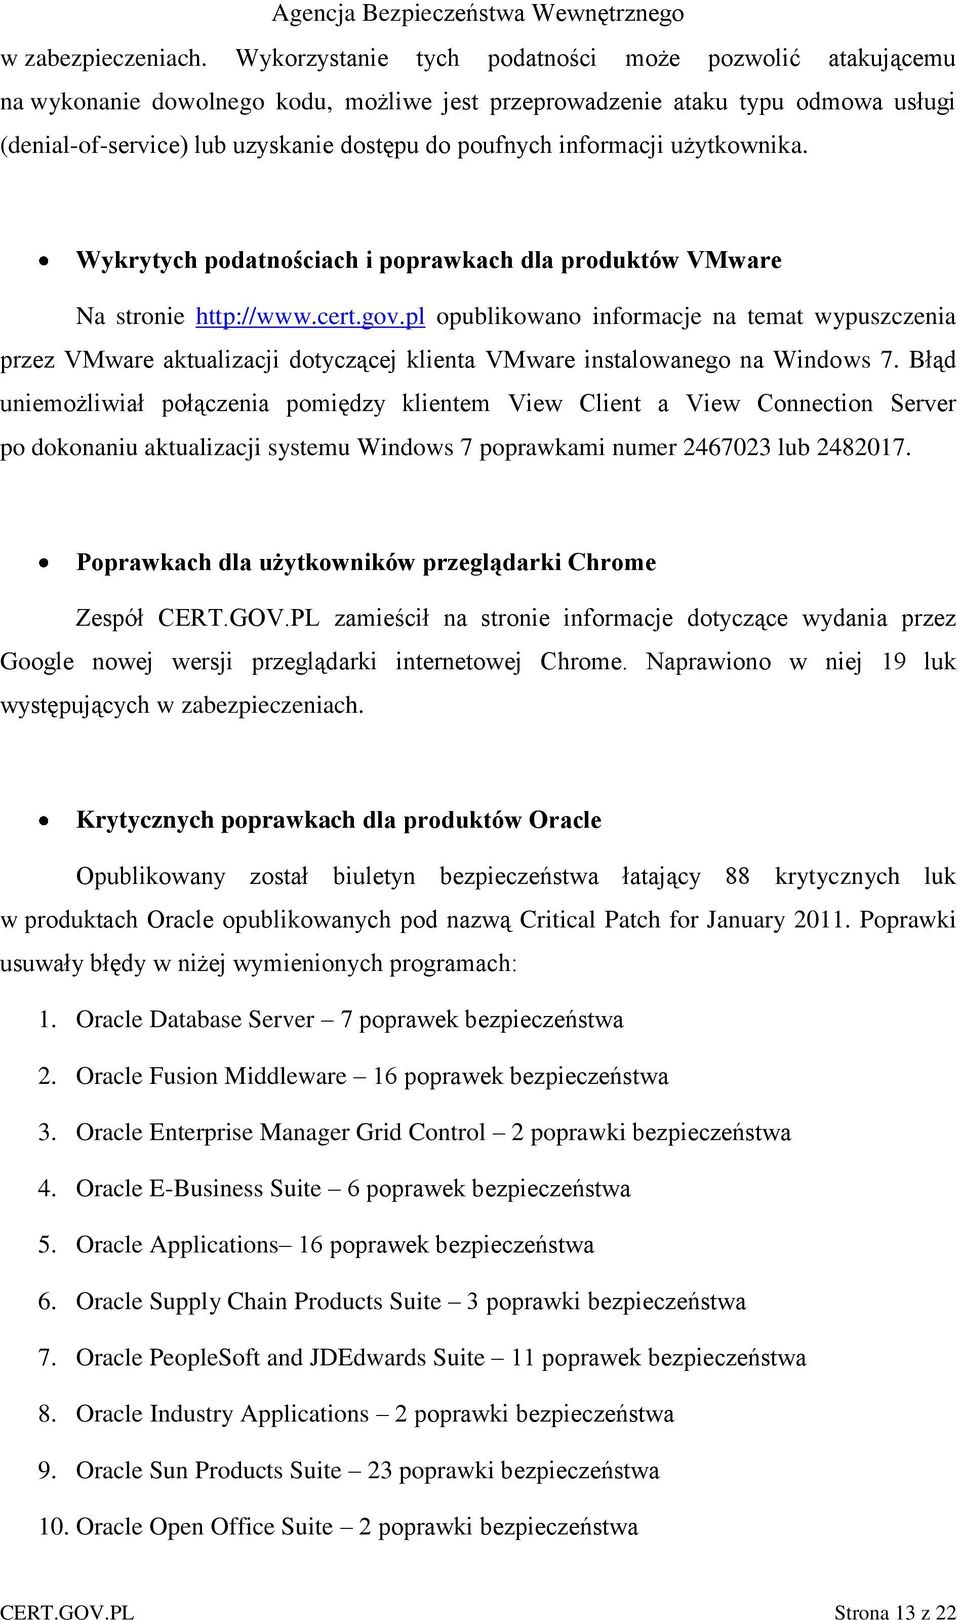 informacji użytkownika. Wykrytych podatnościach i poprawkach dla produktów VMware Na stronie http://www.cert.gov.